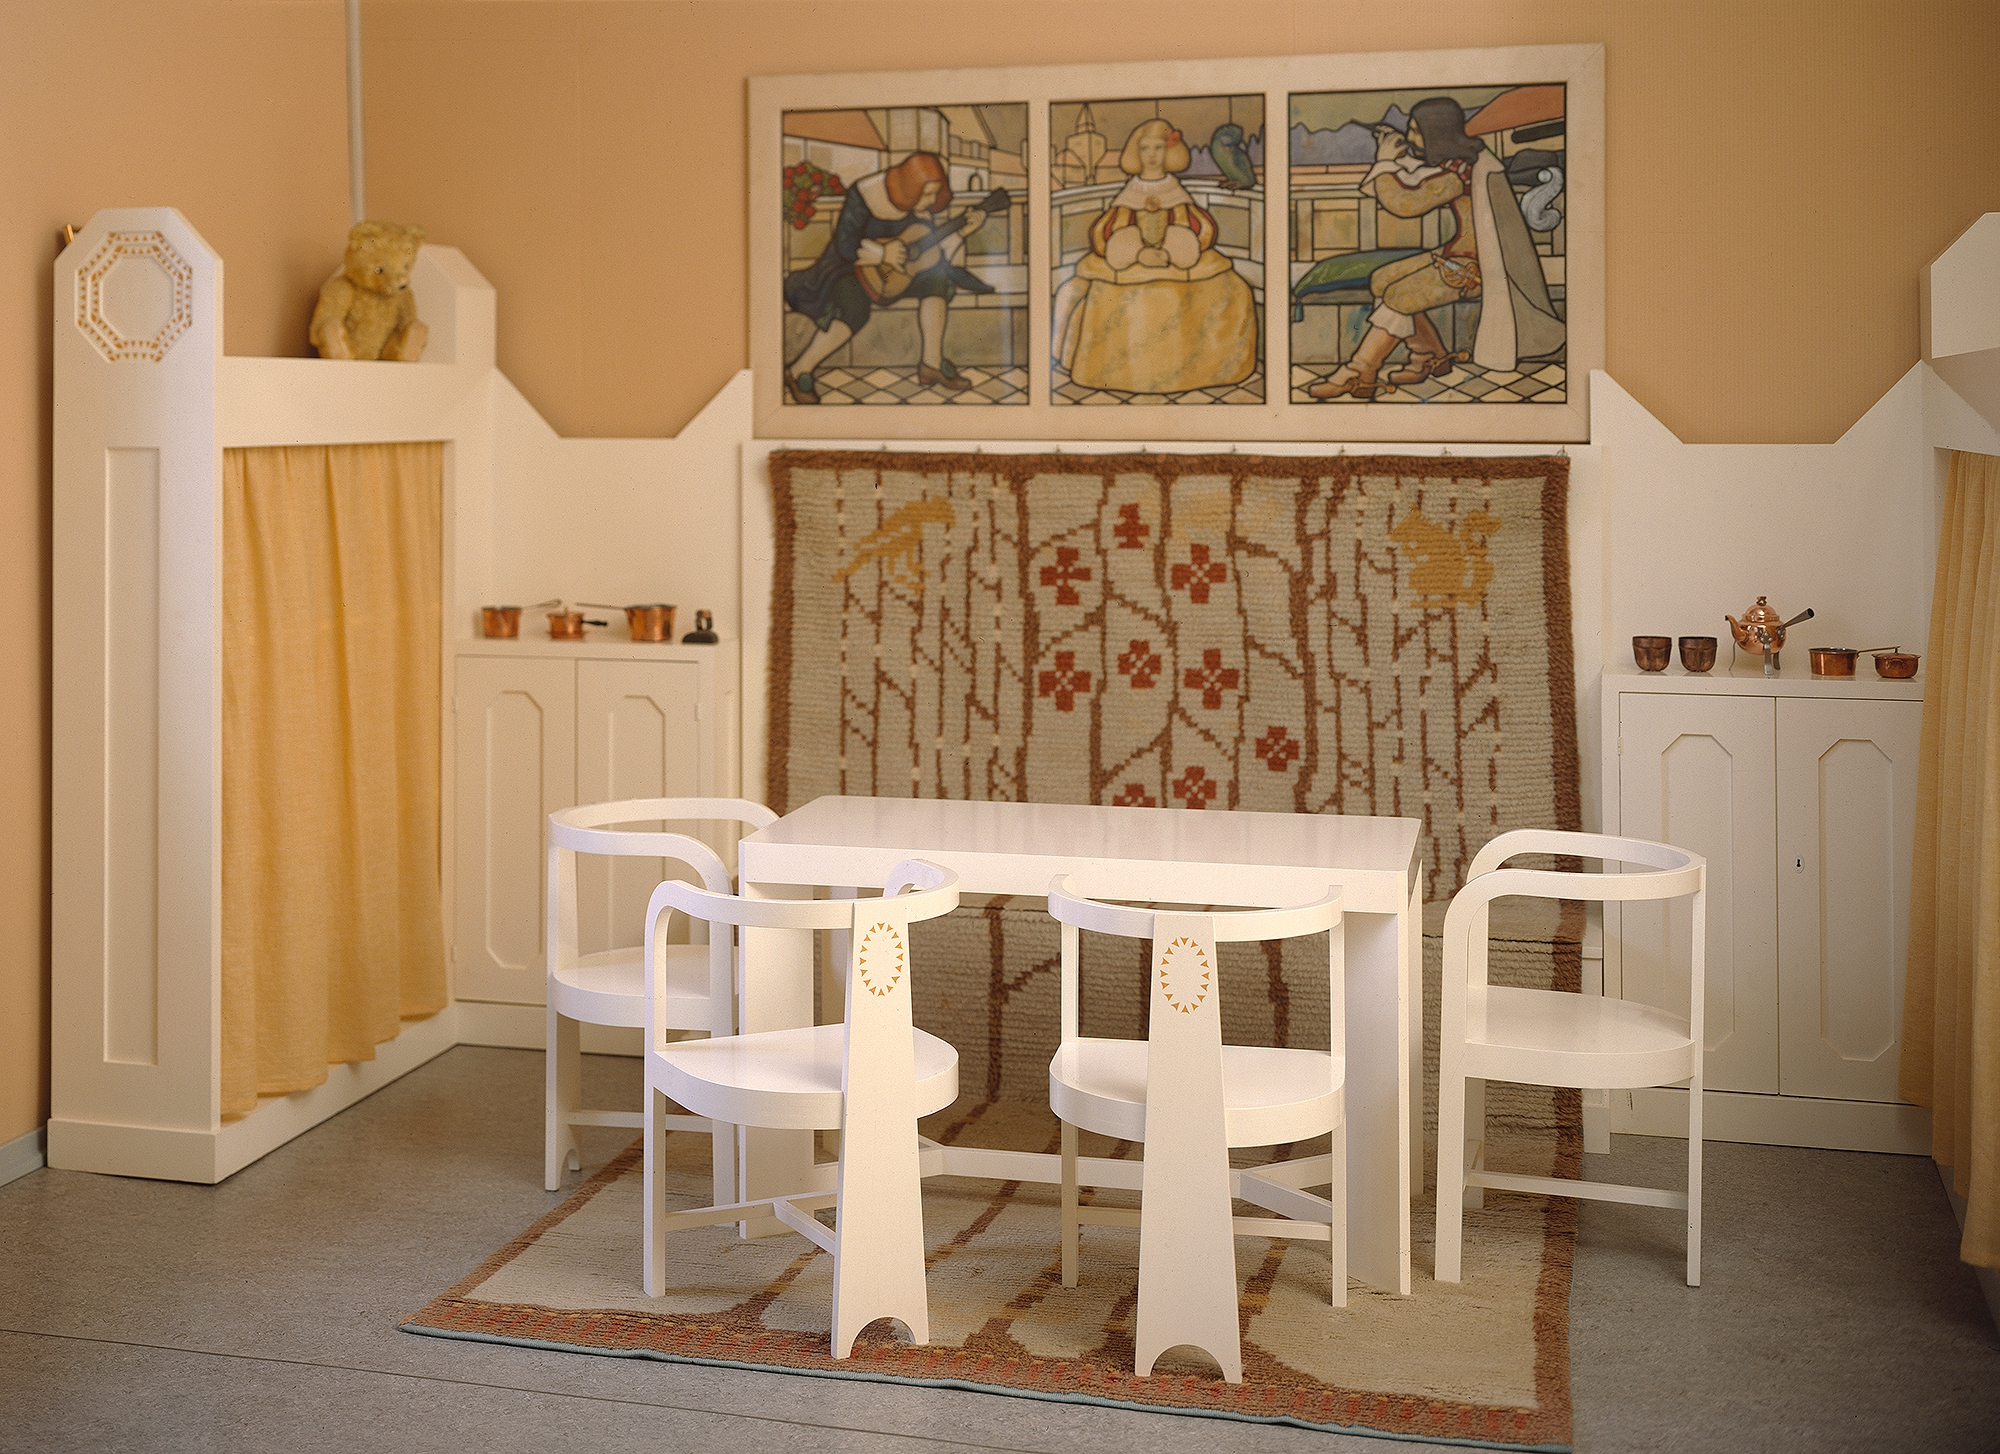 Keltaseinäisessa huoneessa valkoisia lapsille mitoitettuja puukalusteita ja seinällä kolmioisainen maalaus.